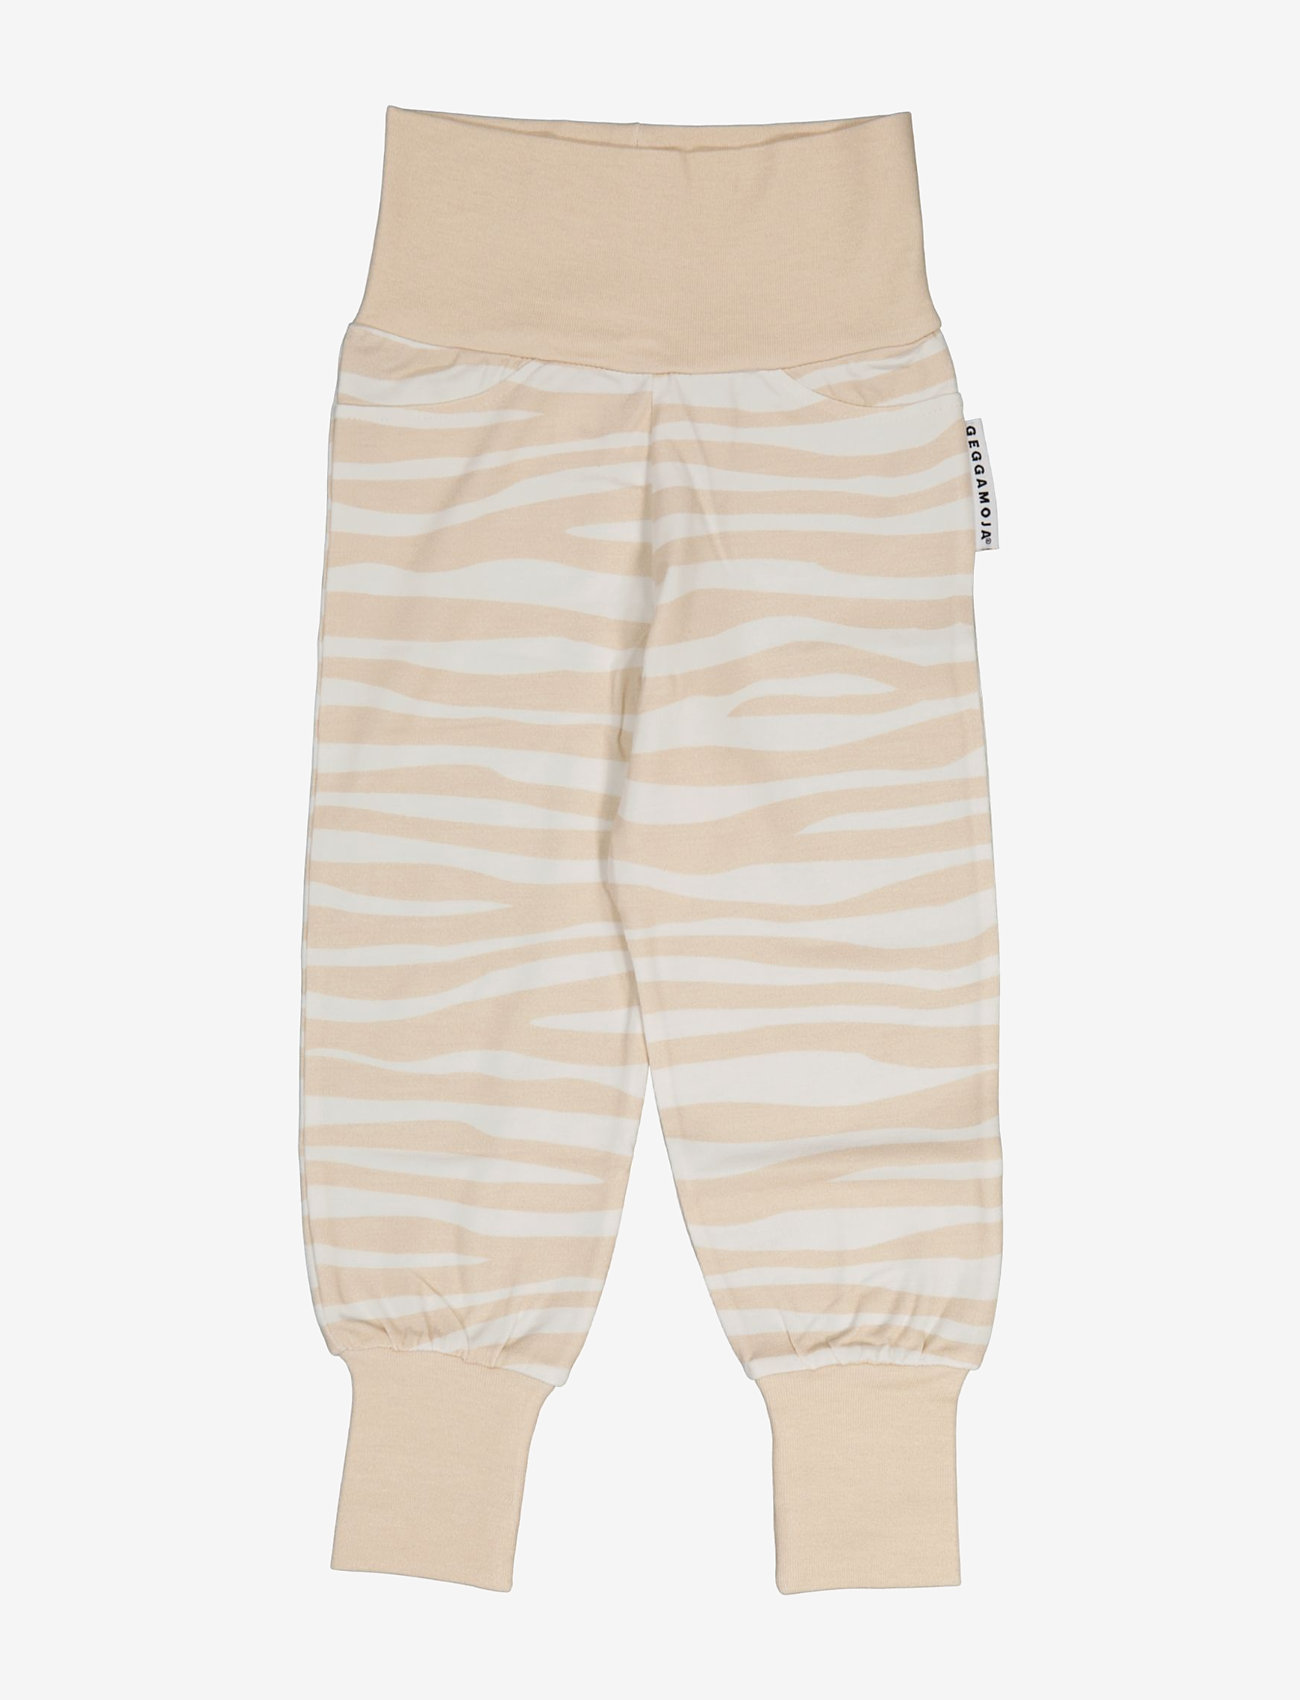 Geggamoja - Bamboo baby pants - gode sommertilbud - beige zebra - 0